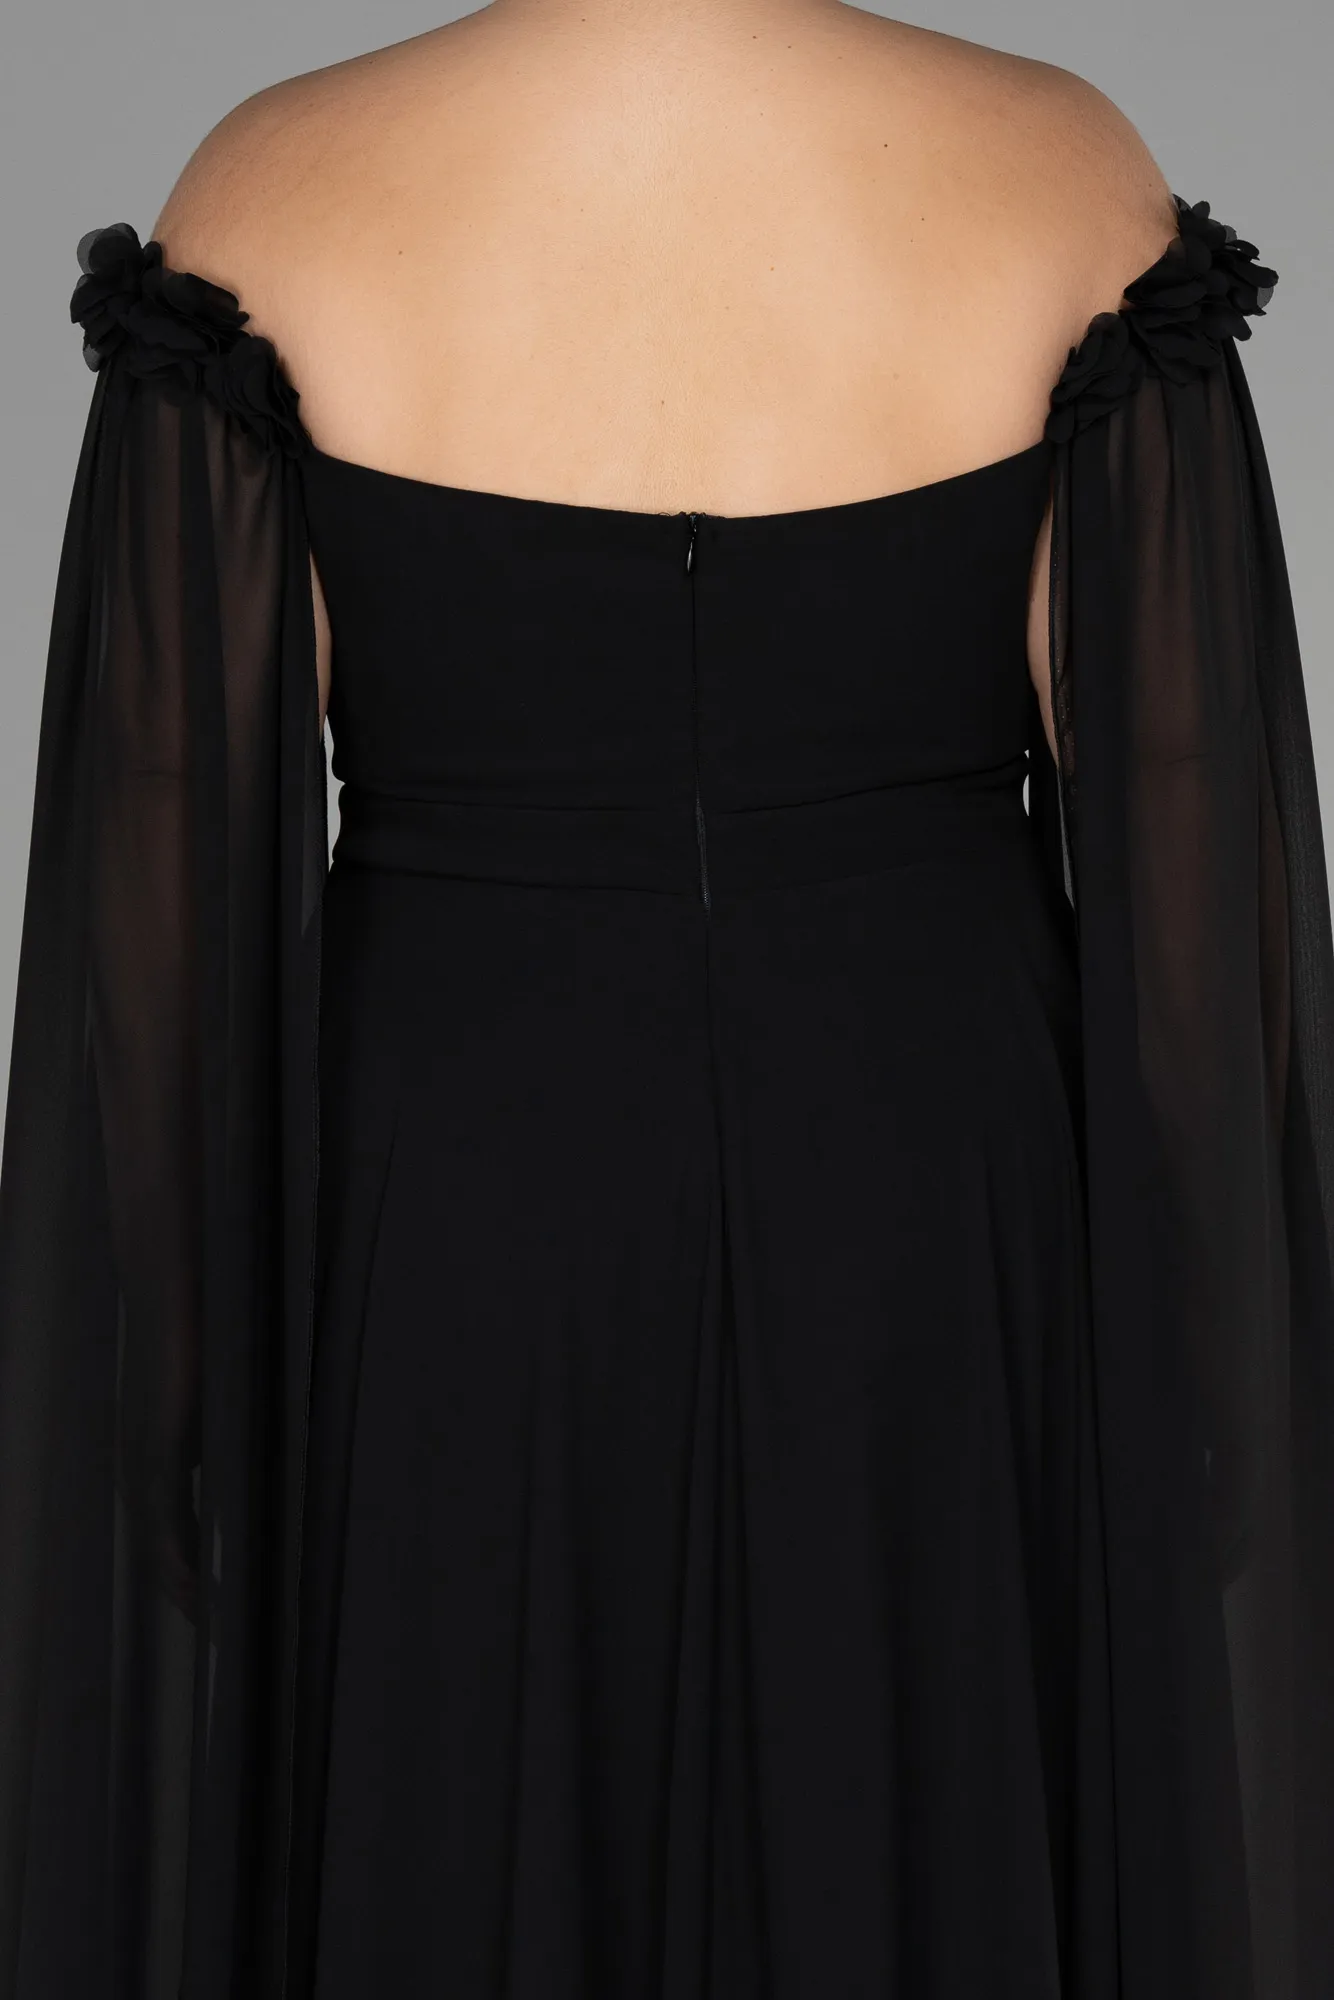 Black-Long Chiffon Plus Size Evening Dress ABU3464